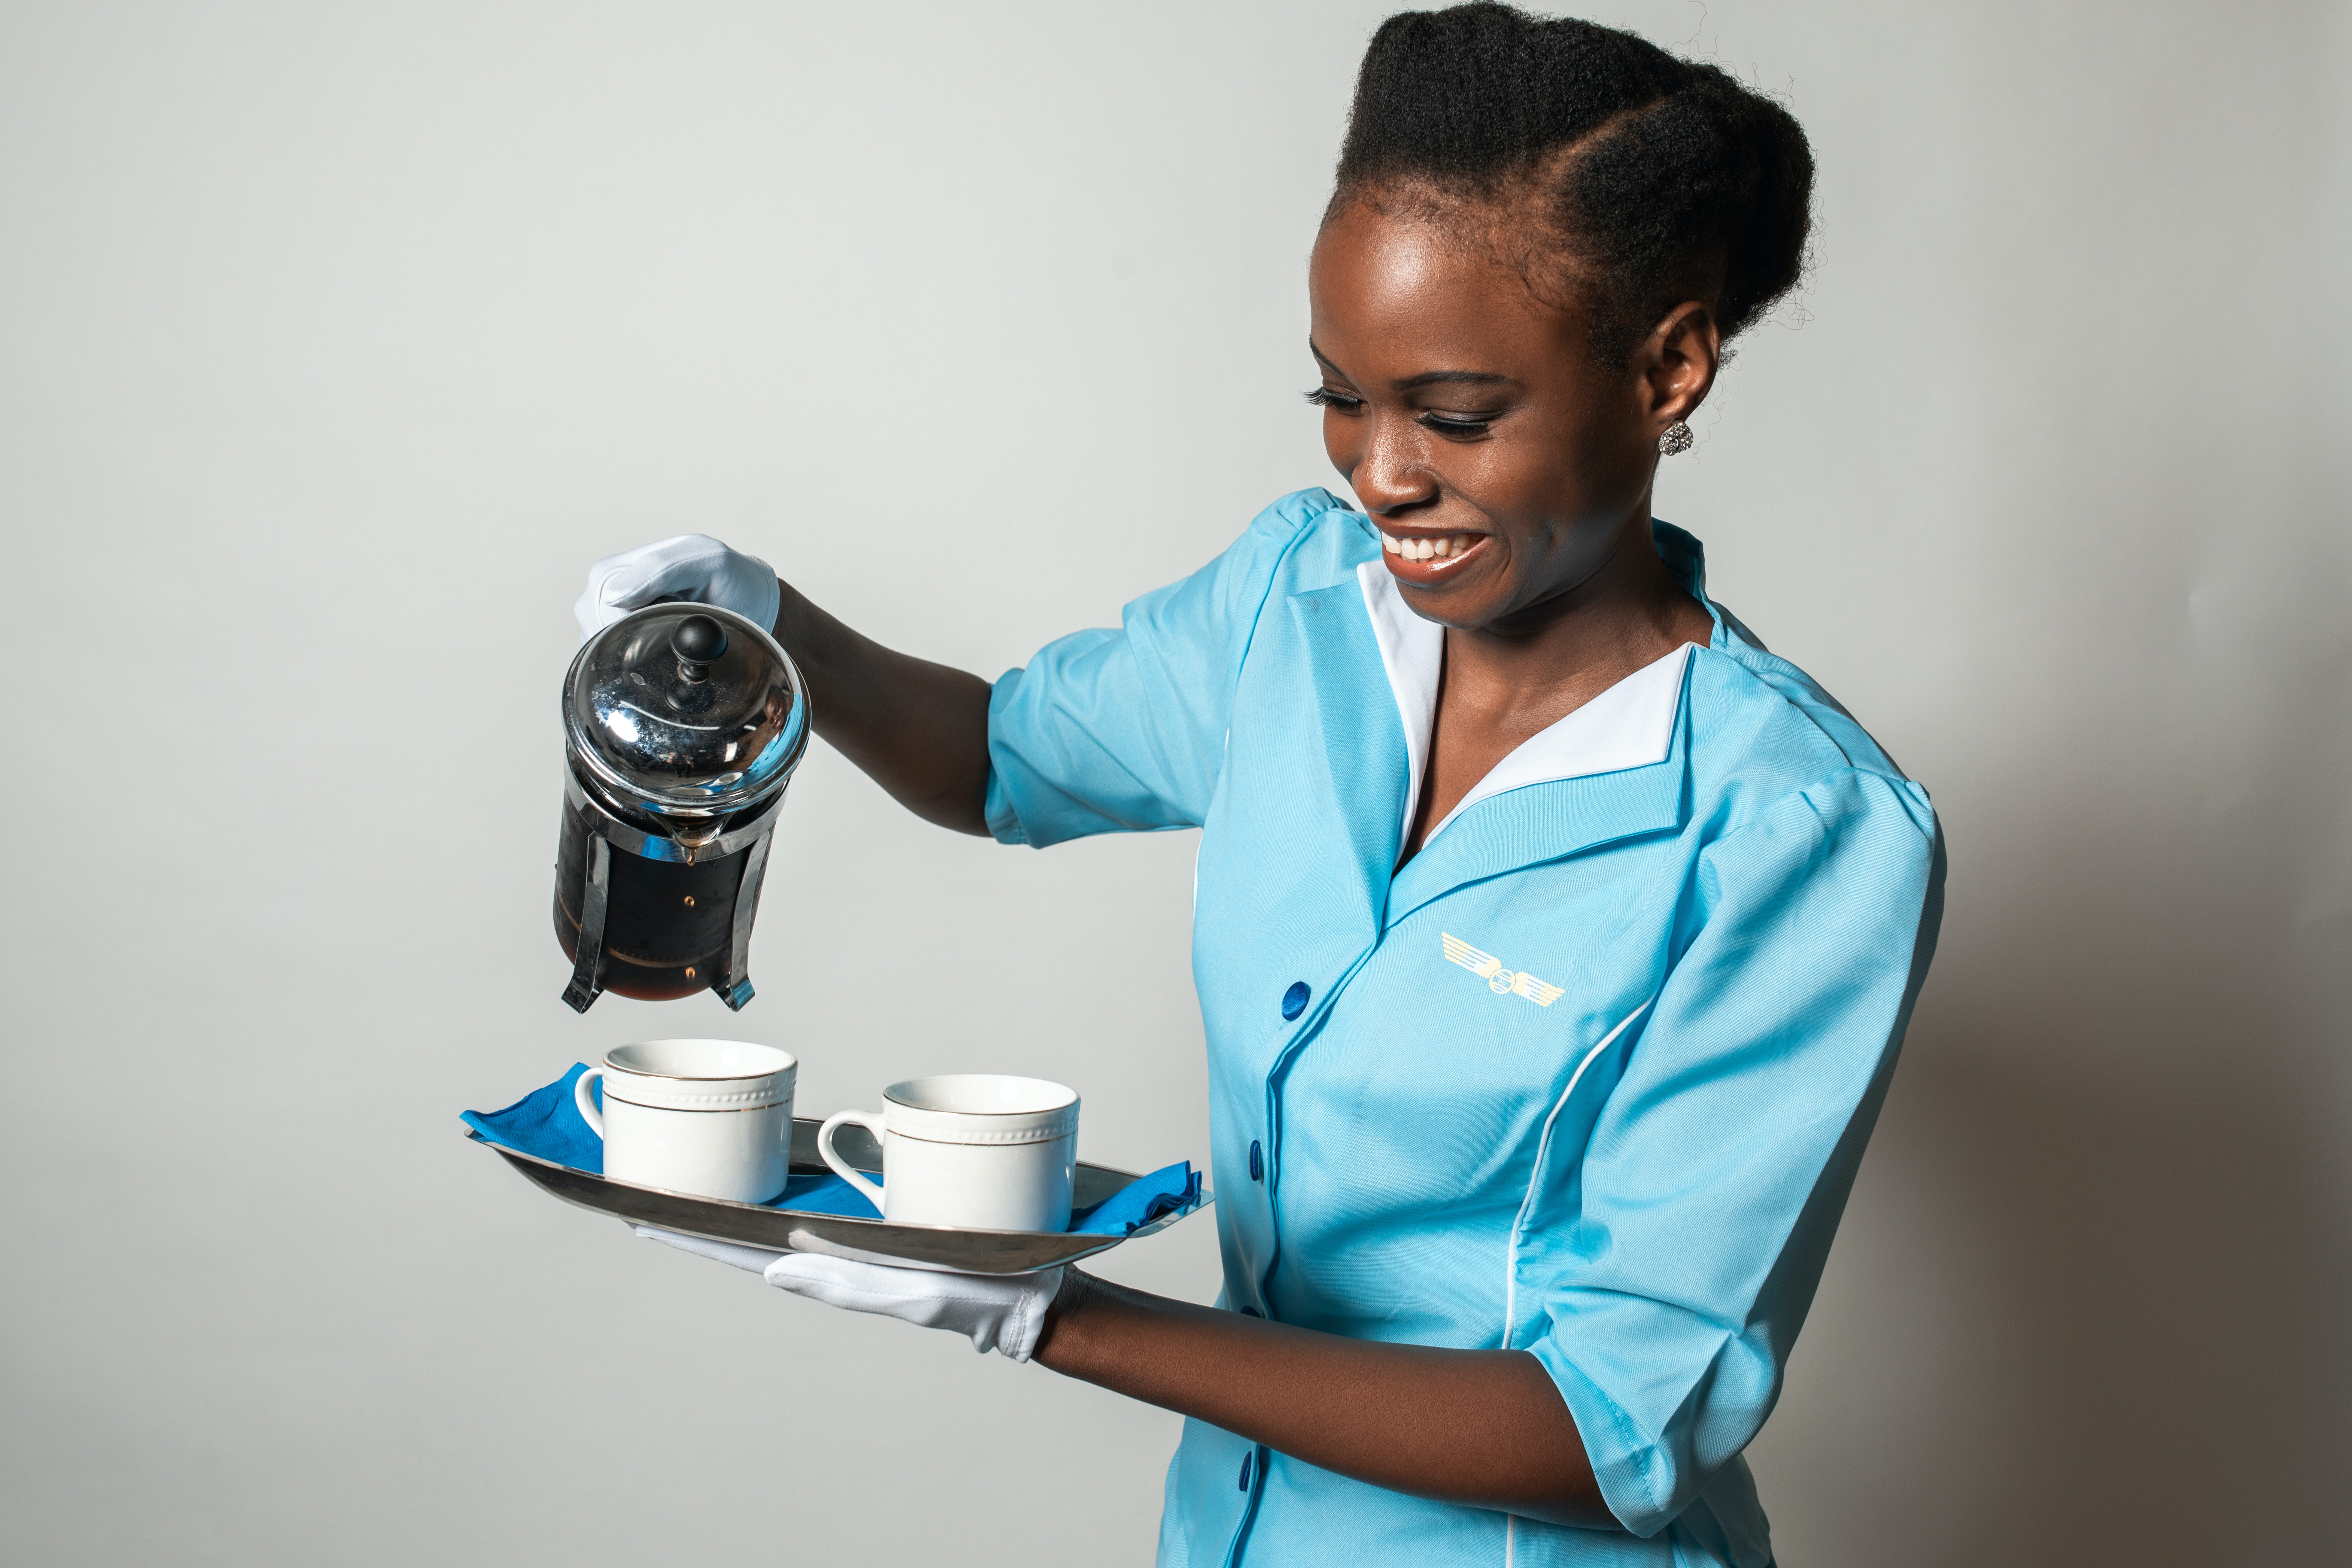 Hôtesse de l'air servant du café | Source : Pexels